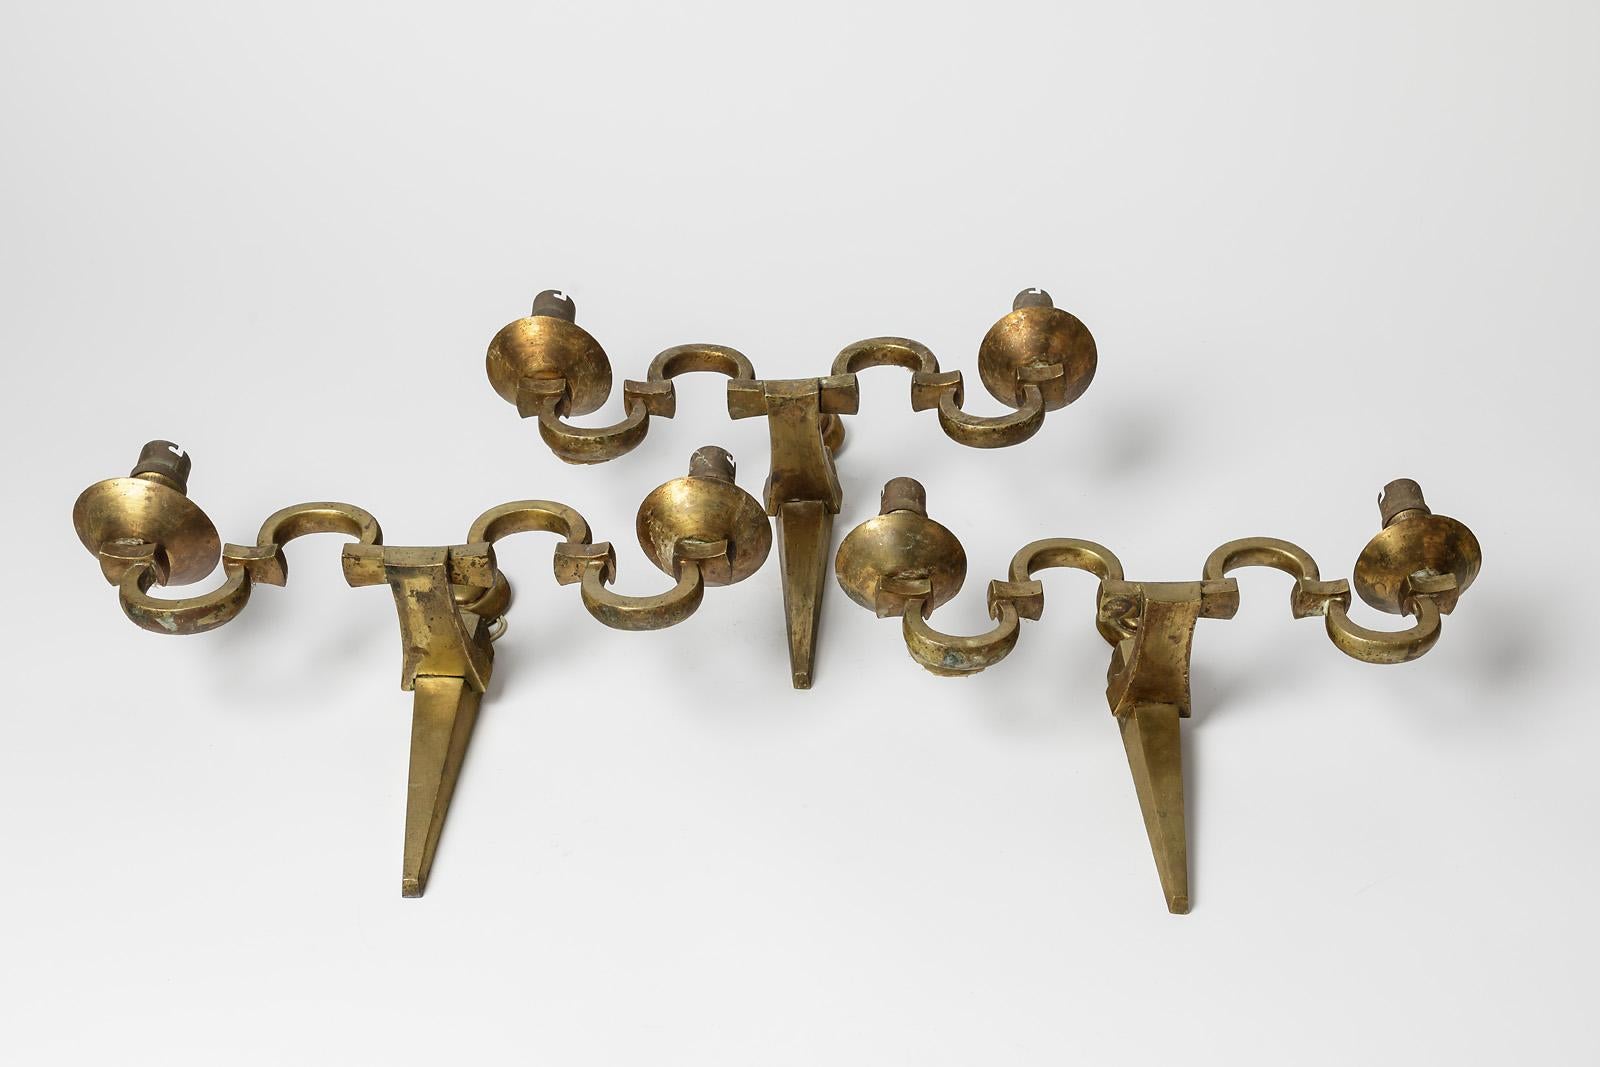 Nach dem Vorbild von Maison Jansen

Art deco 1940 Metall golden Messing Wandleuchten

Satz mit drei Wandleuchten

Original guter Zustand

Maße: Höhe 25 cm
Groß 35 cm
Tiefe 10 cm.